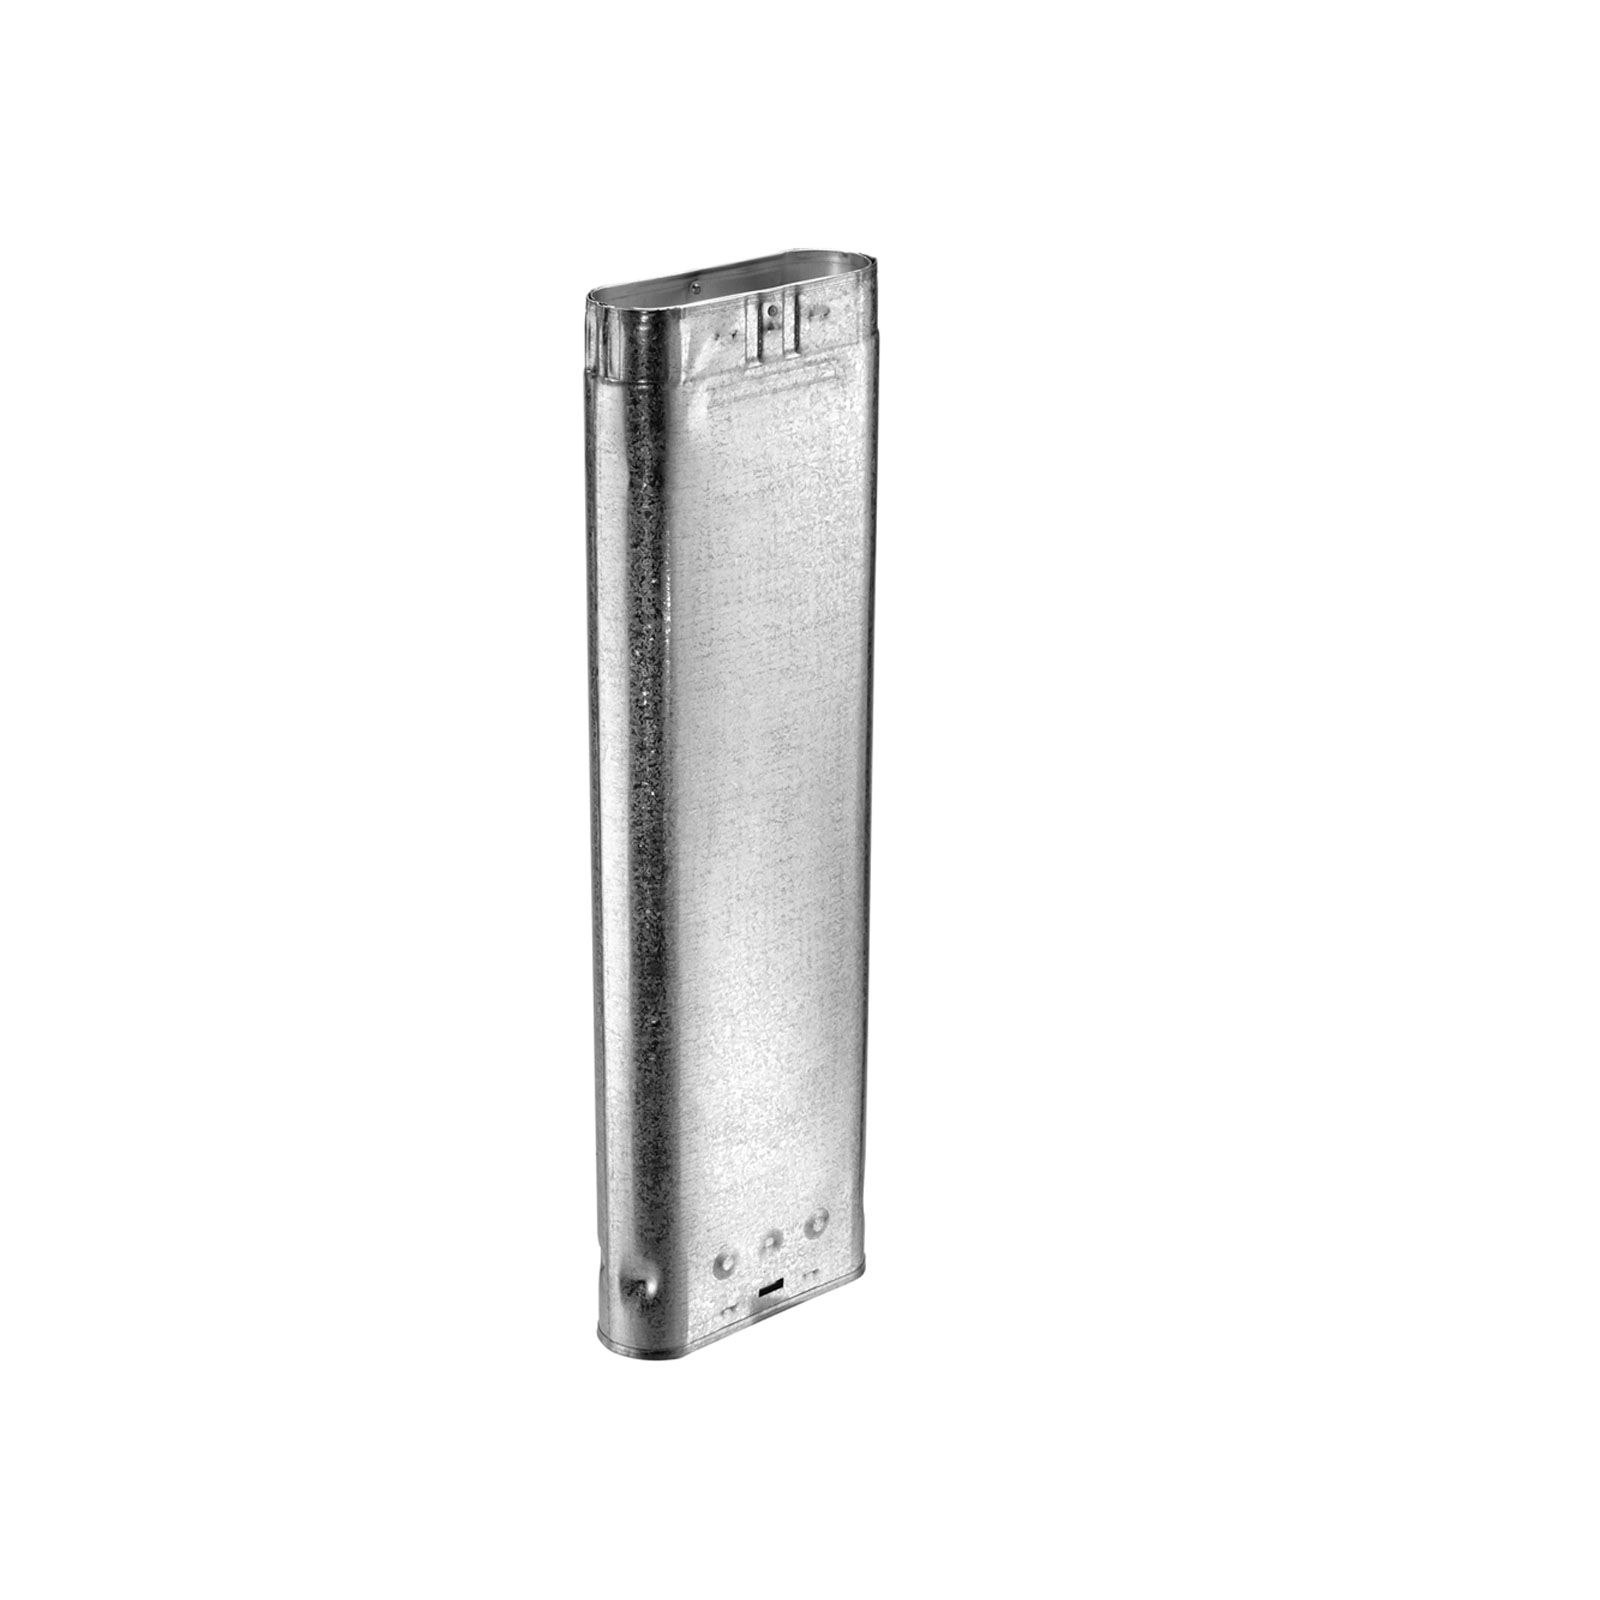 DuraVent 4GW36 - Aluminum 36" Length Oval Rigid Pipe with 4" Inner Diameter